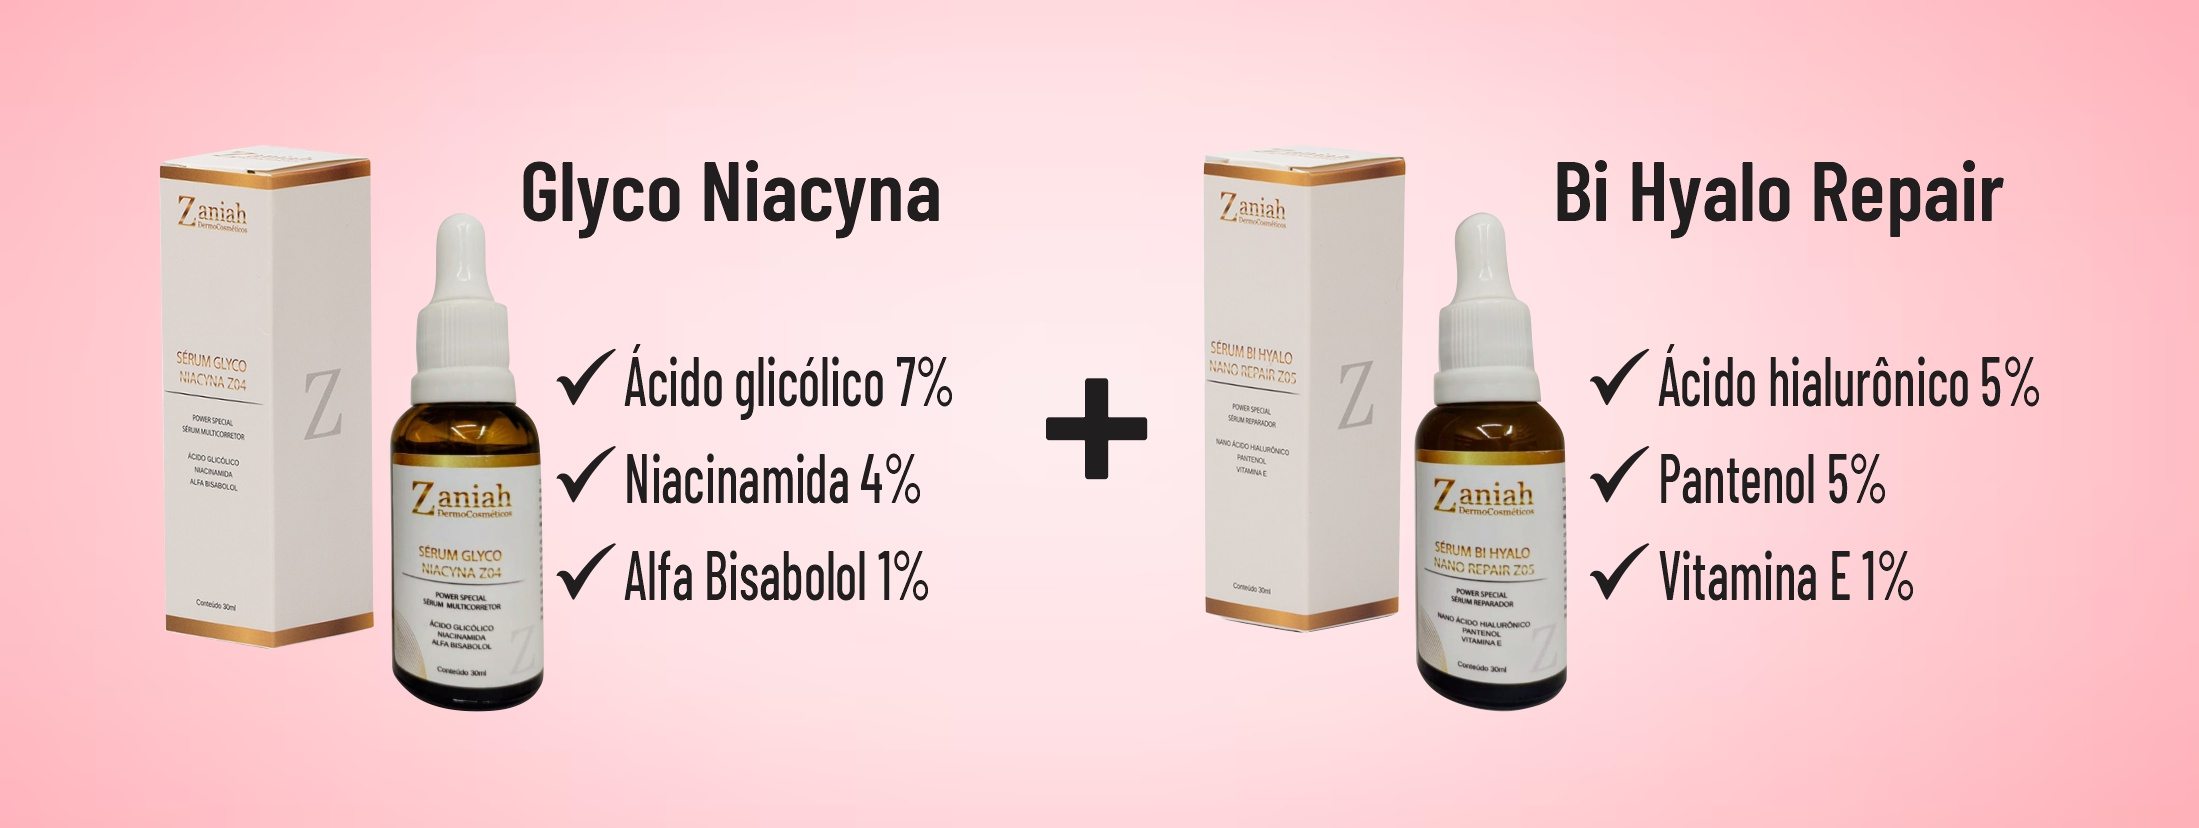 Glyco Niacyn 3X1 - Anti-Manchas, Rugas e Oleosidade